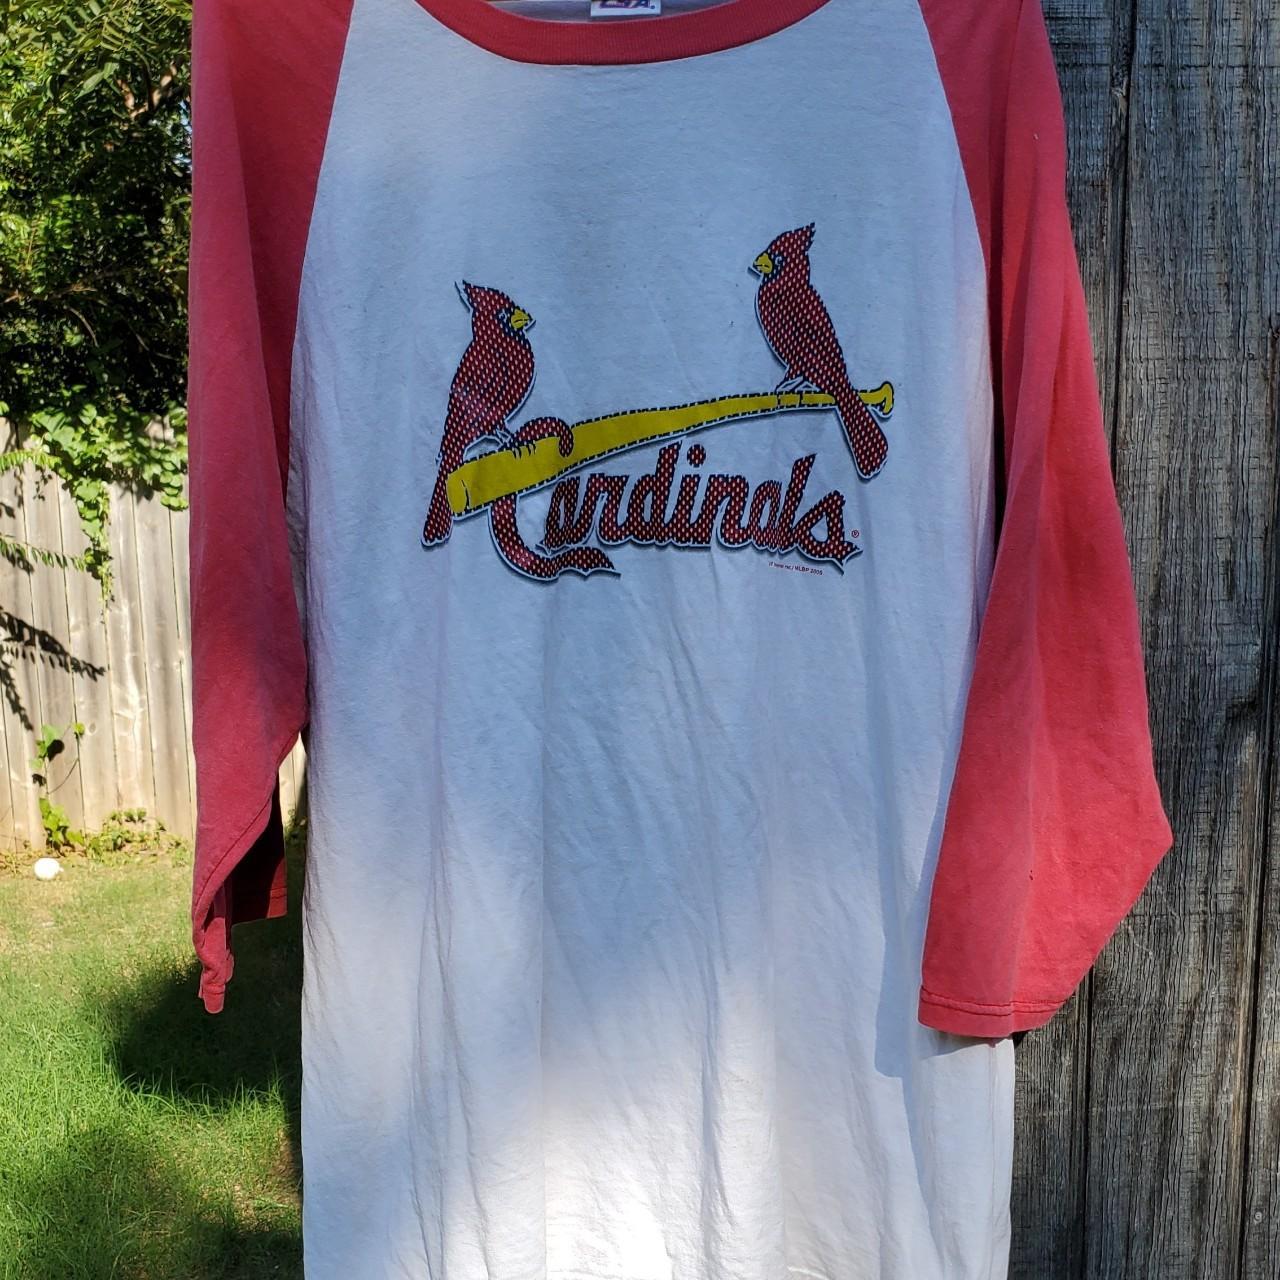 cardinals baseball tee